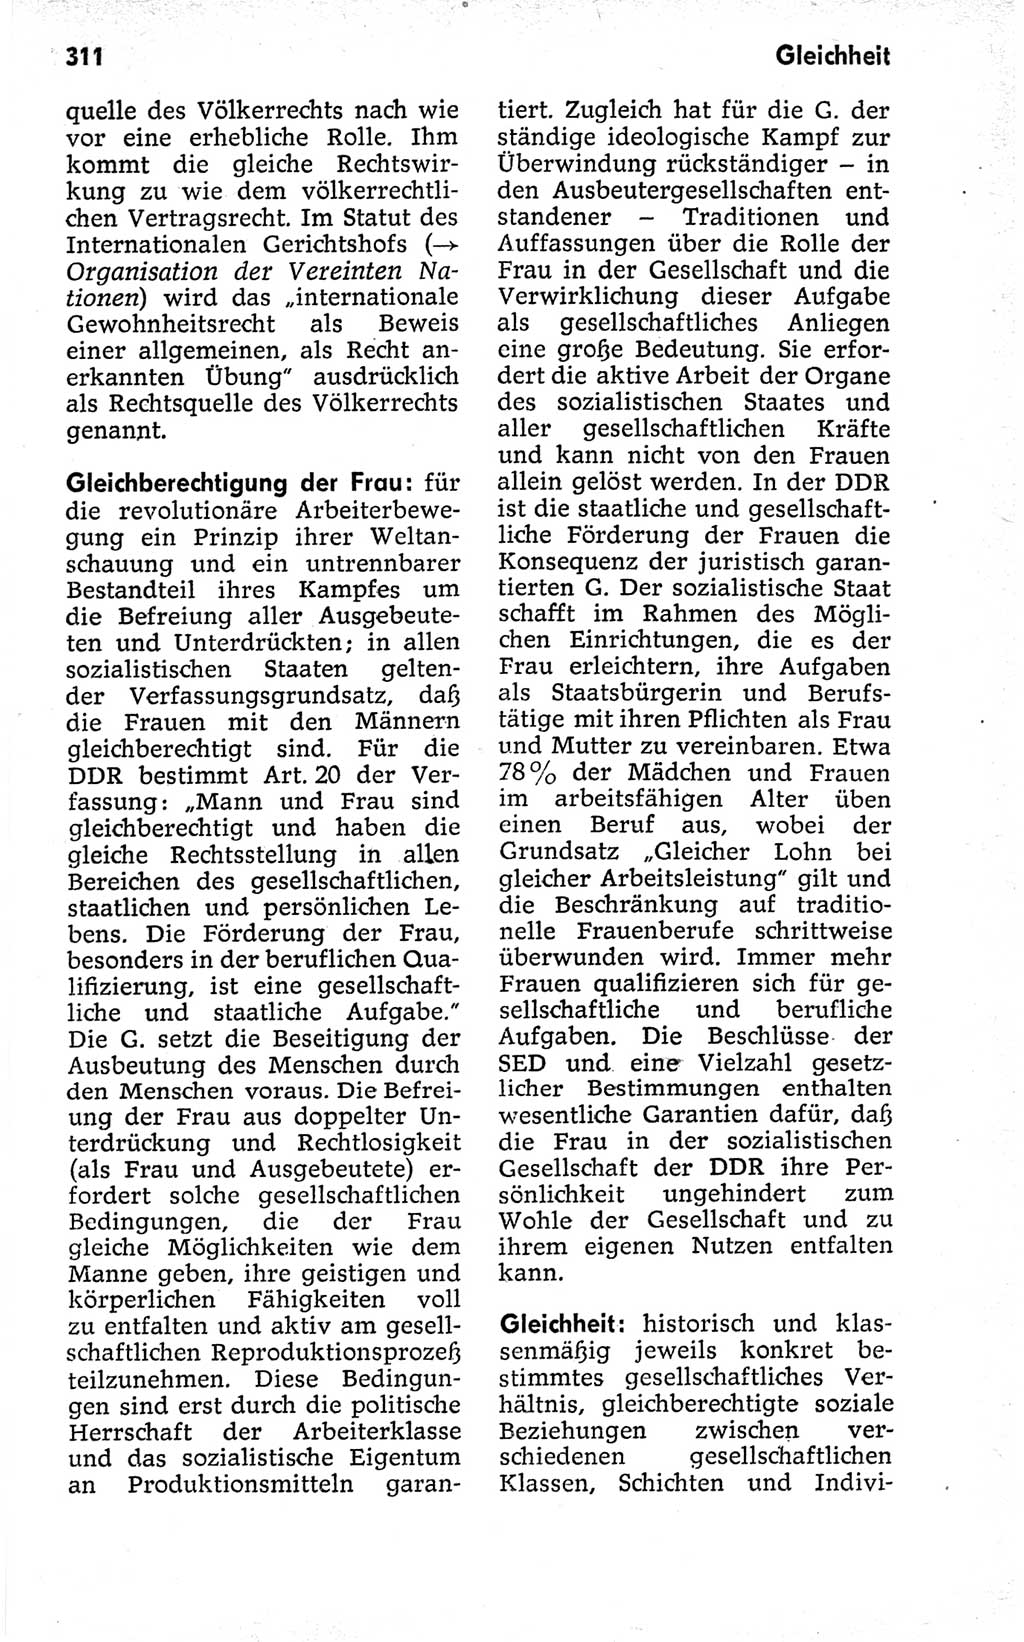 Kleines politisches Wörterbuch [Deutsche Demokratische Republik (DDR)] 1973, Seite 311 (Kl. pol. Wb. DDR 1973, S. 311)